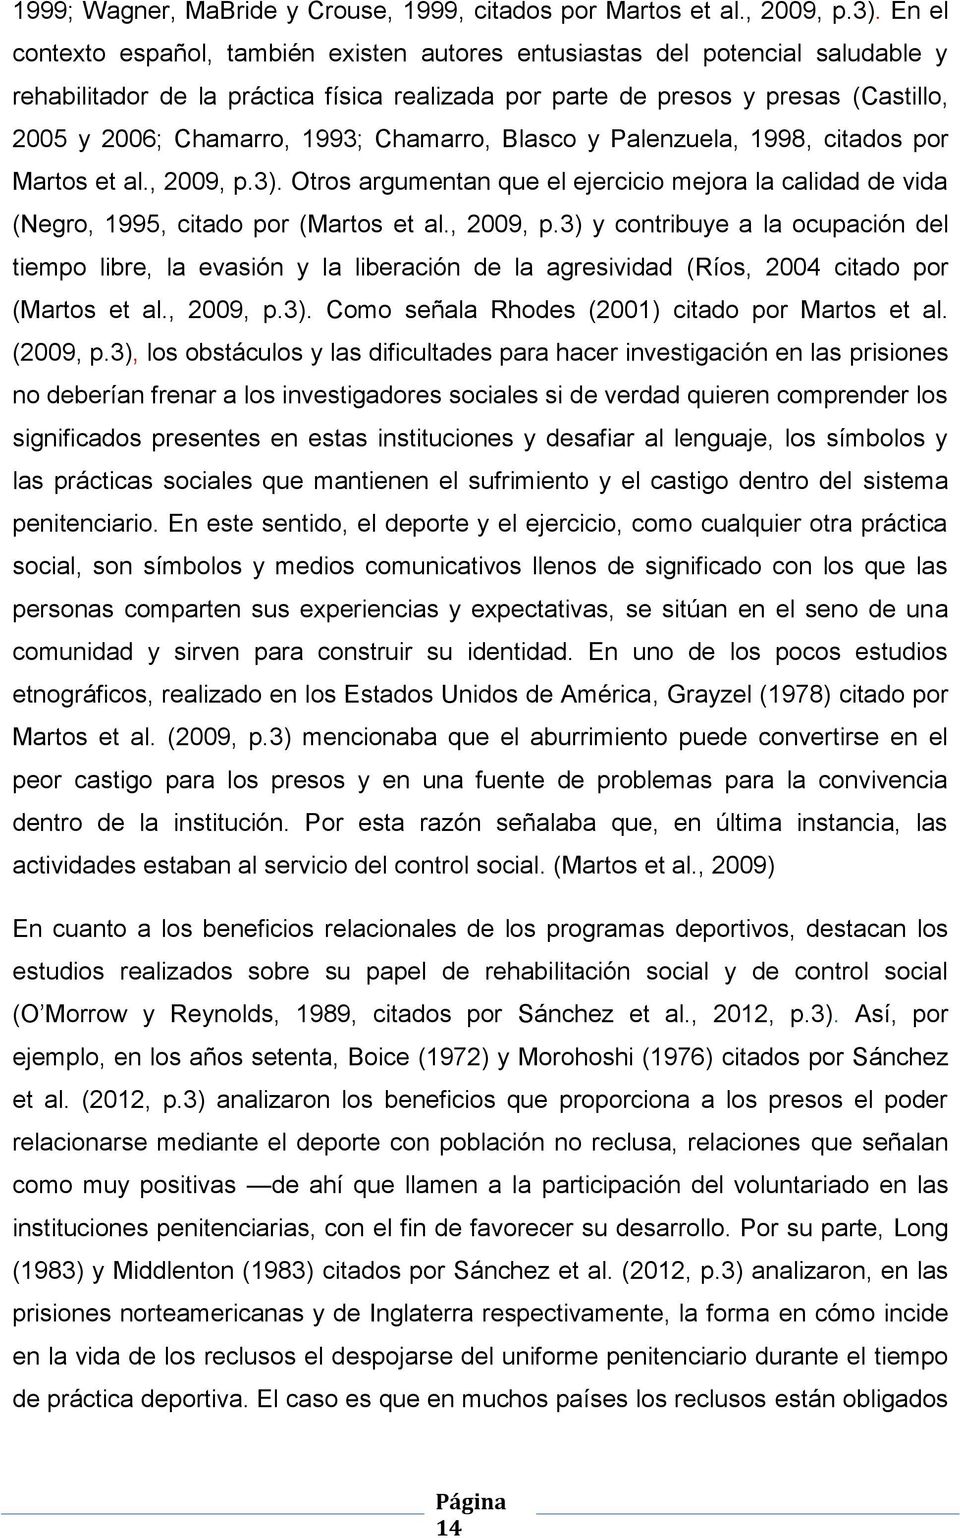 1993; Chamarro, Blasco y Palenzuela, 1998, citados por Martos et al., 2009, p.